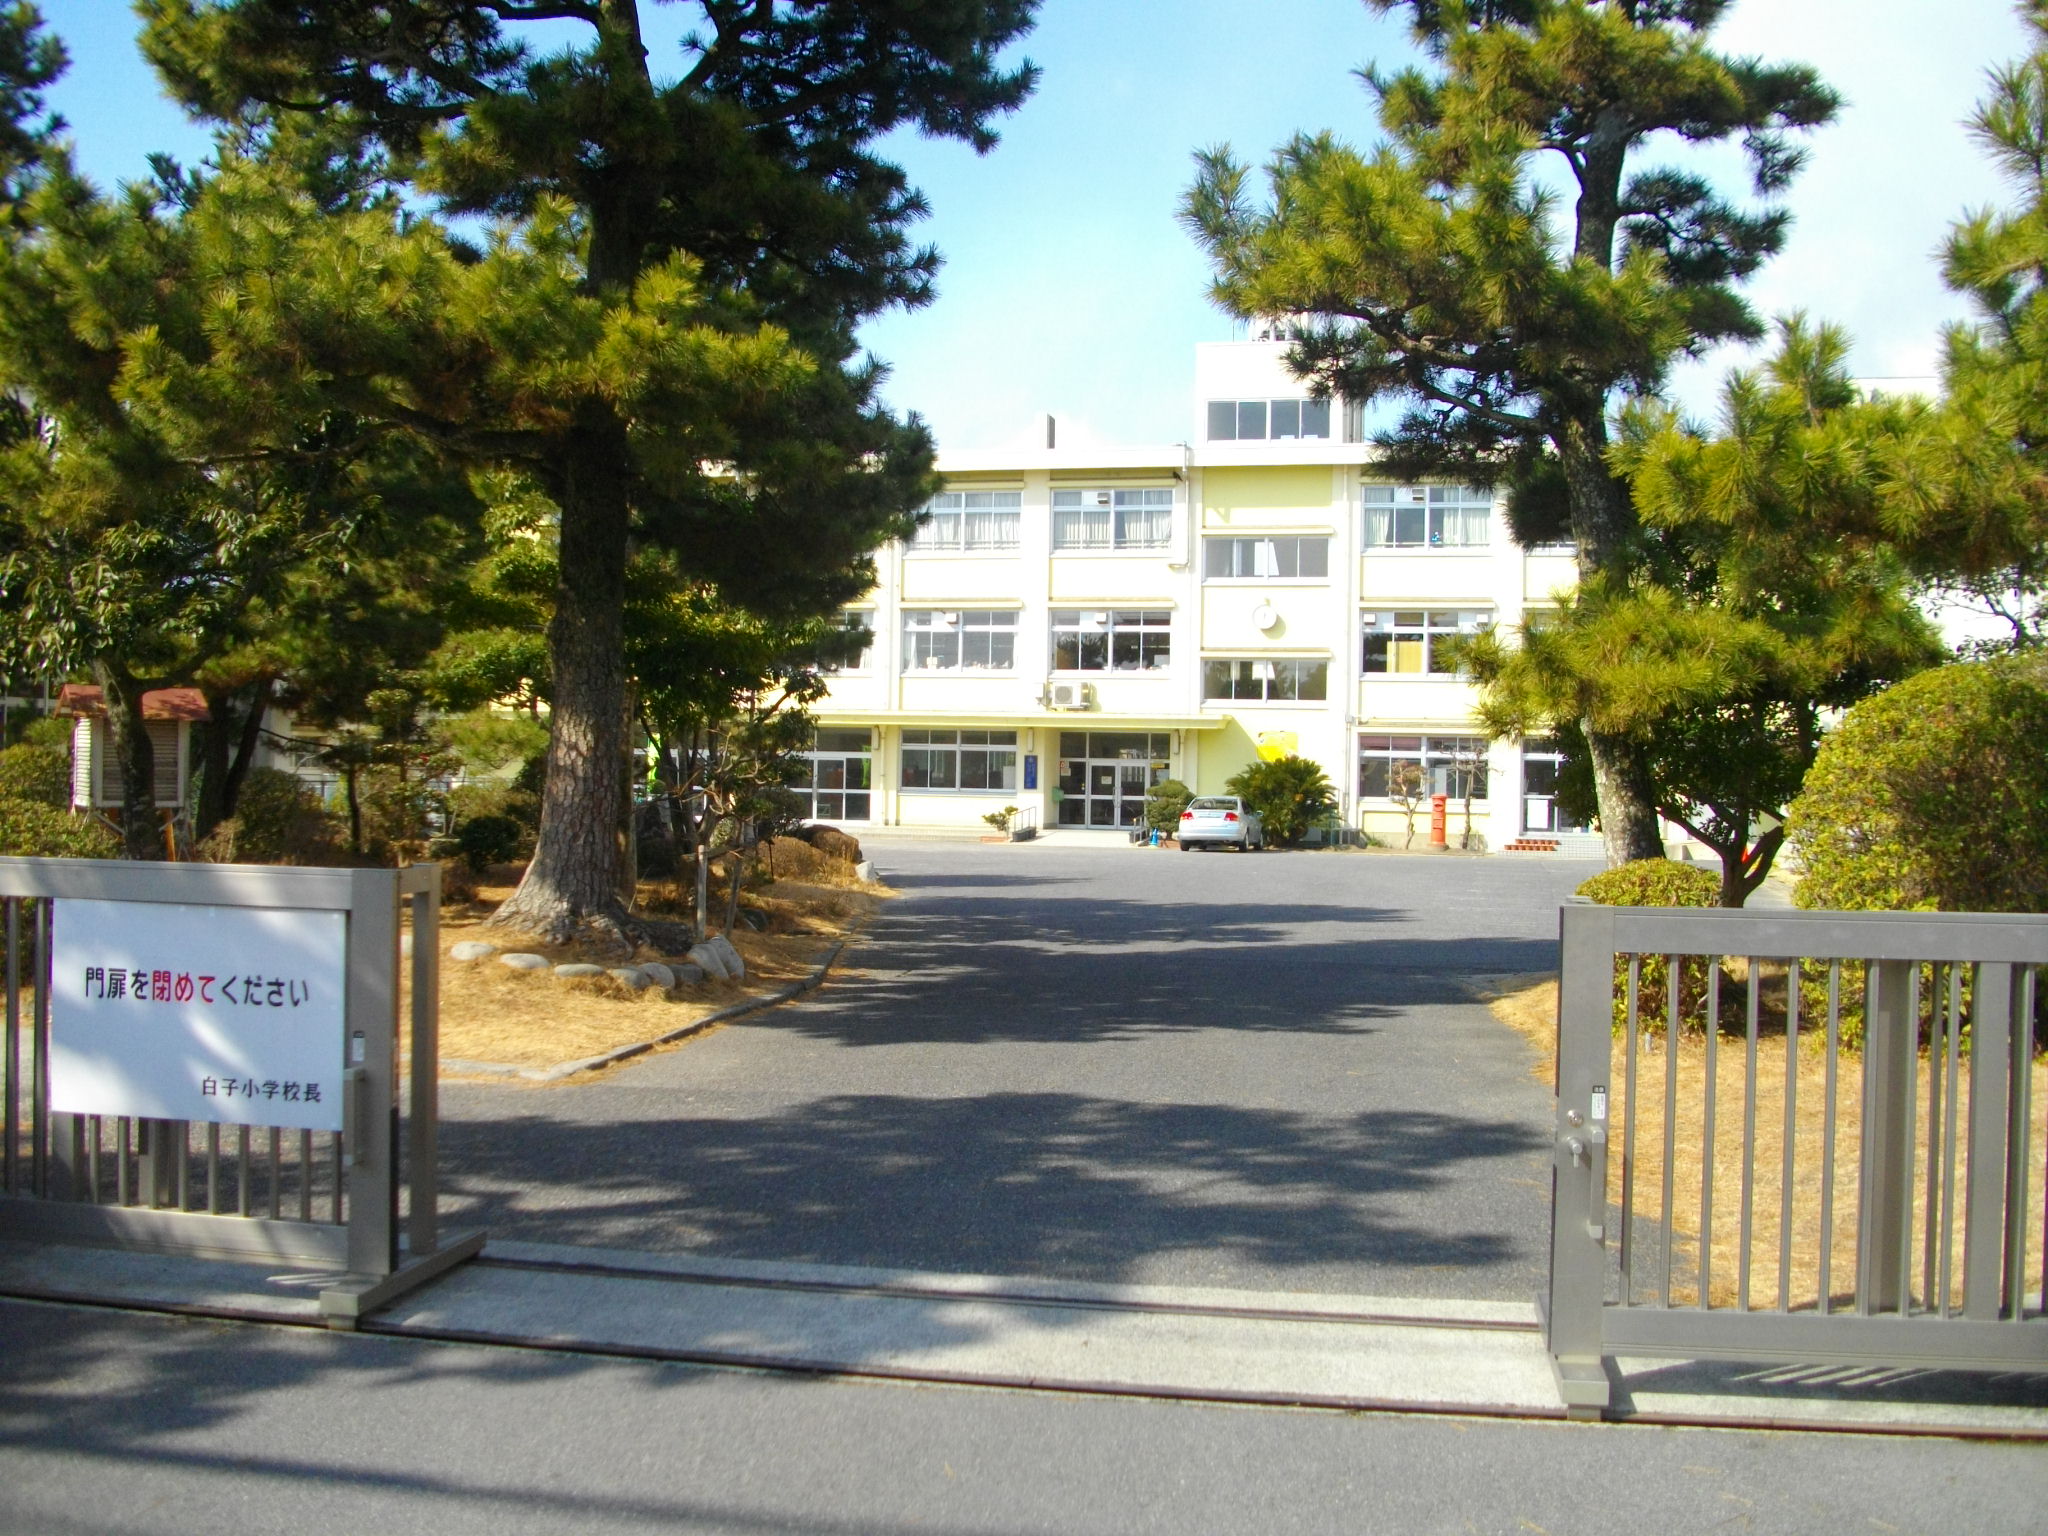 Primary school. 867m until Suzuka Municipal albino elementary school (elementary school)